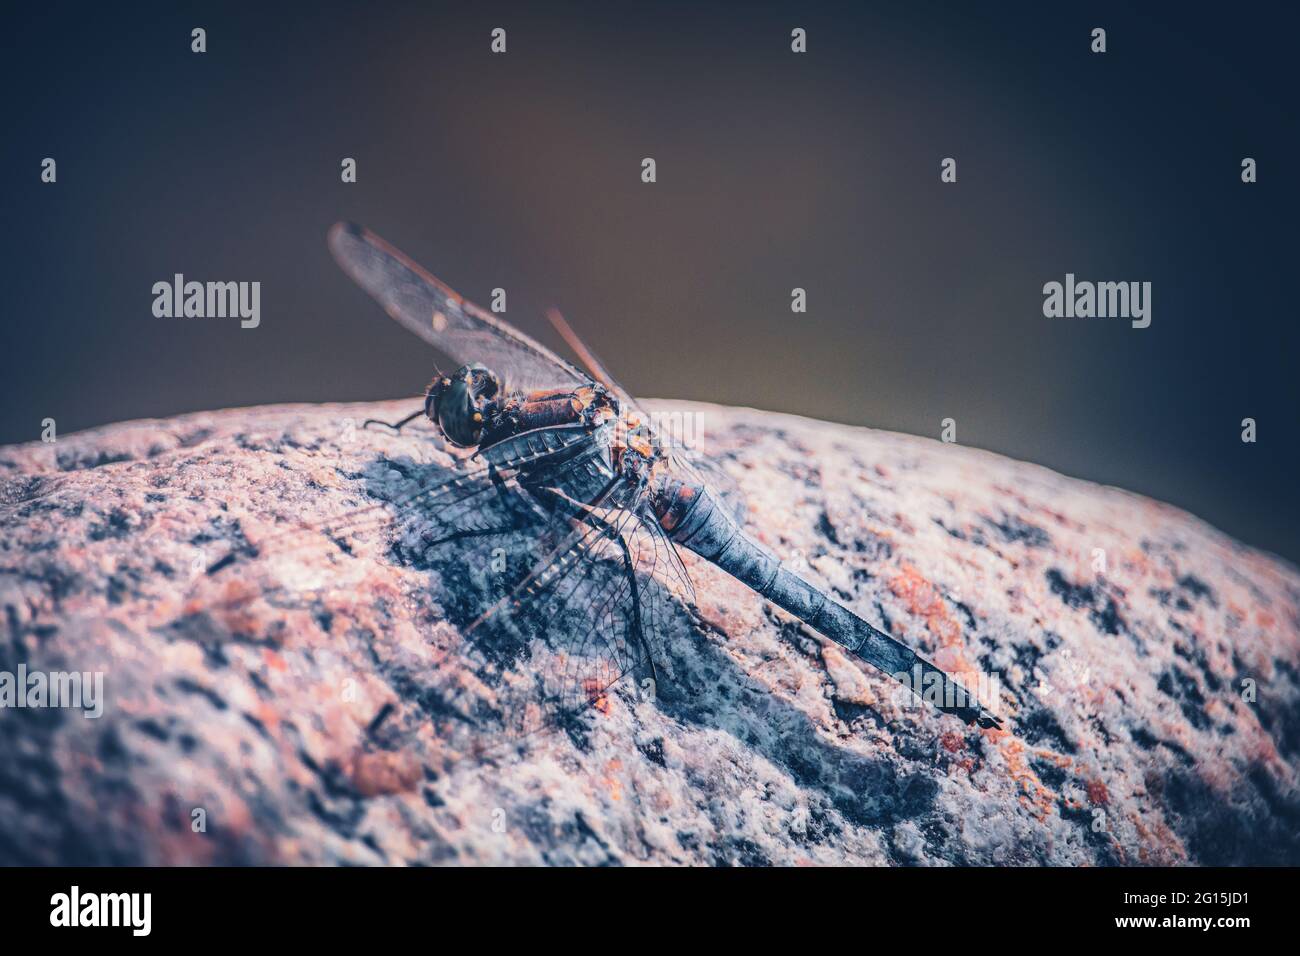 Makroaufnahme einer Libelle, die im Sommer auf einem heißen Stein sitzt und sich sonnt. Dragonfly Deluxe Odonata Insekten Insekten aus nächster Nähe. Stockfoto